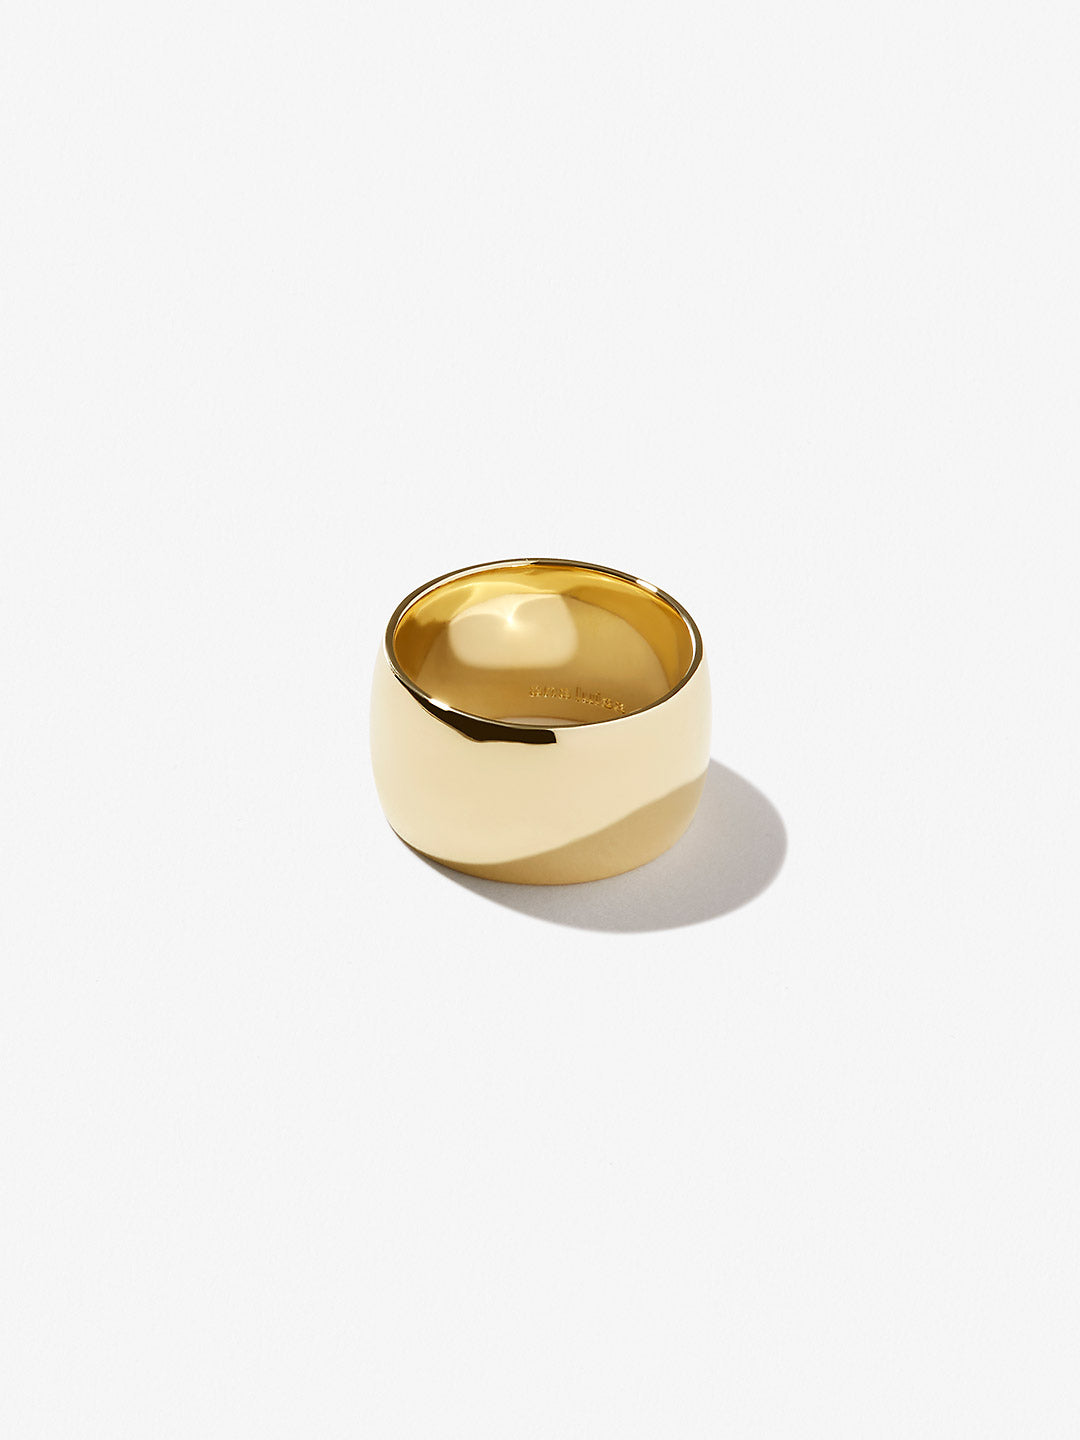 Rings | Ana Luisa Jewelry